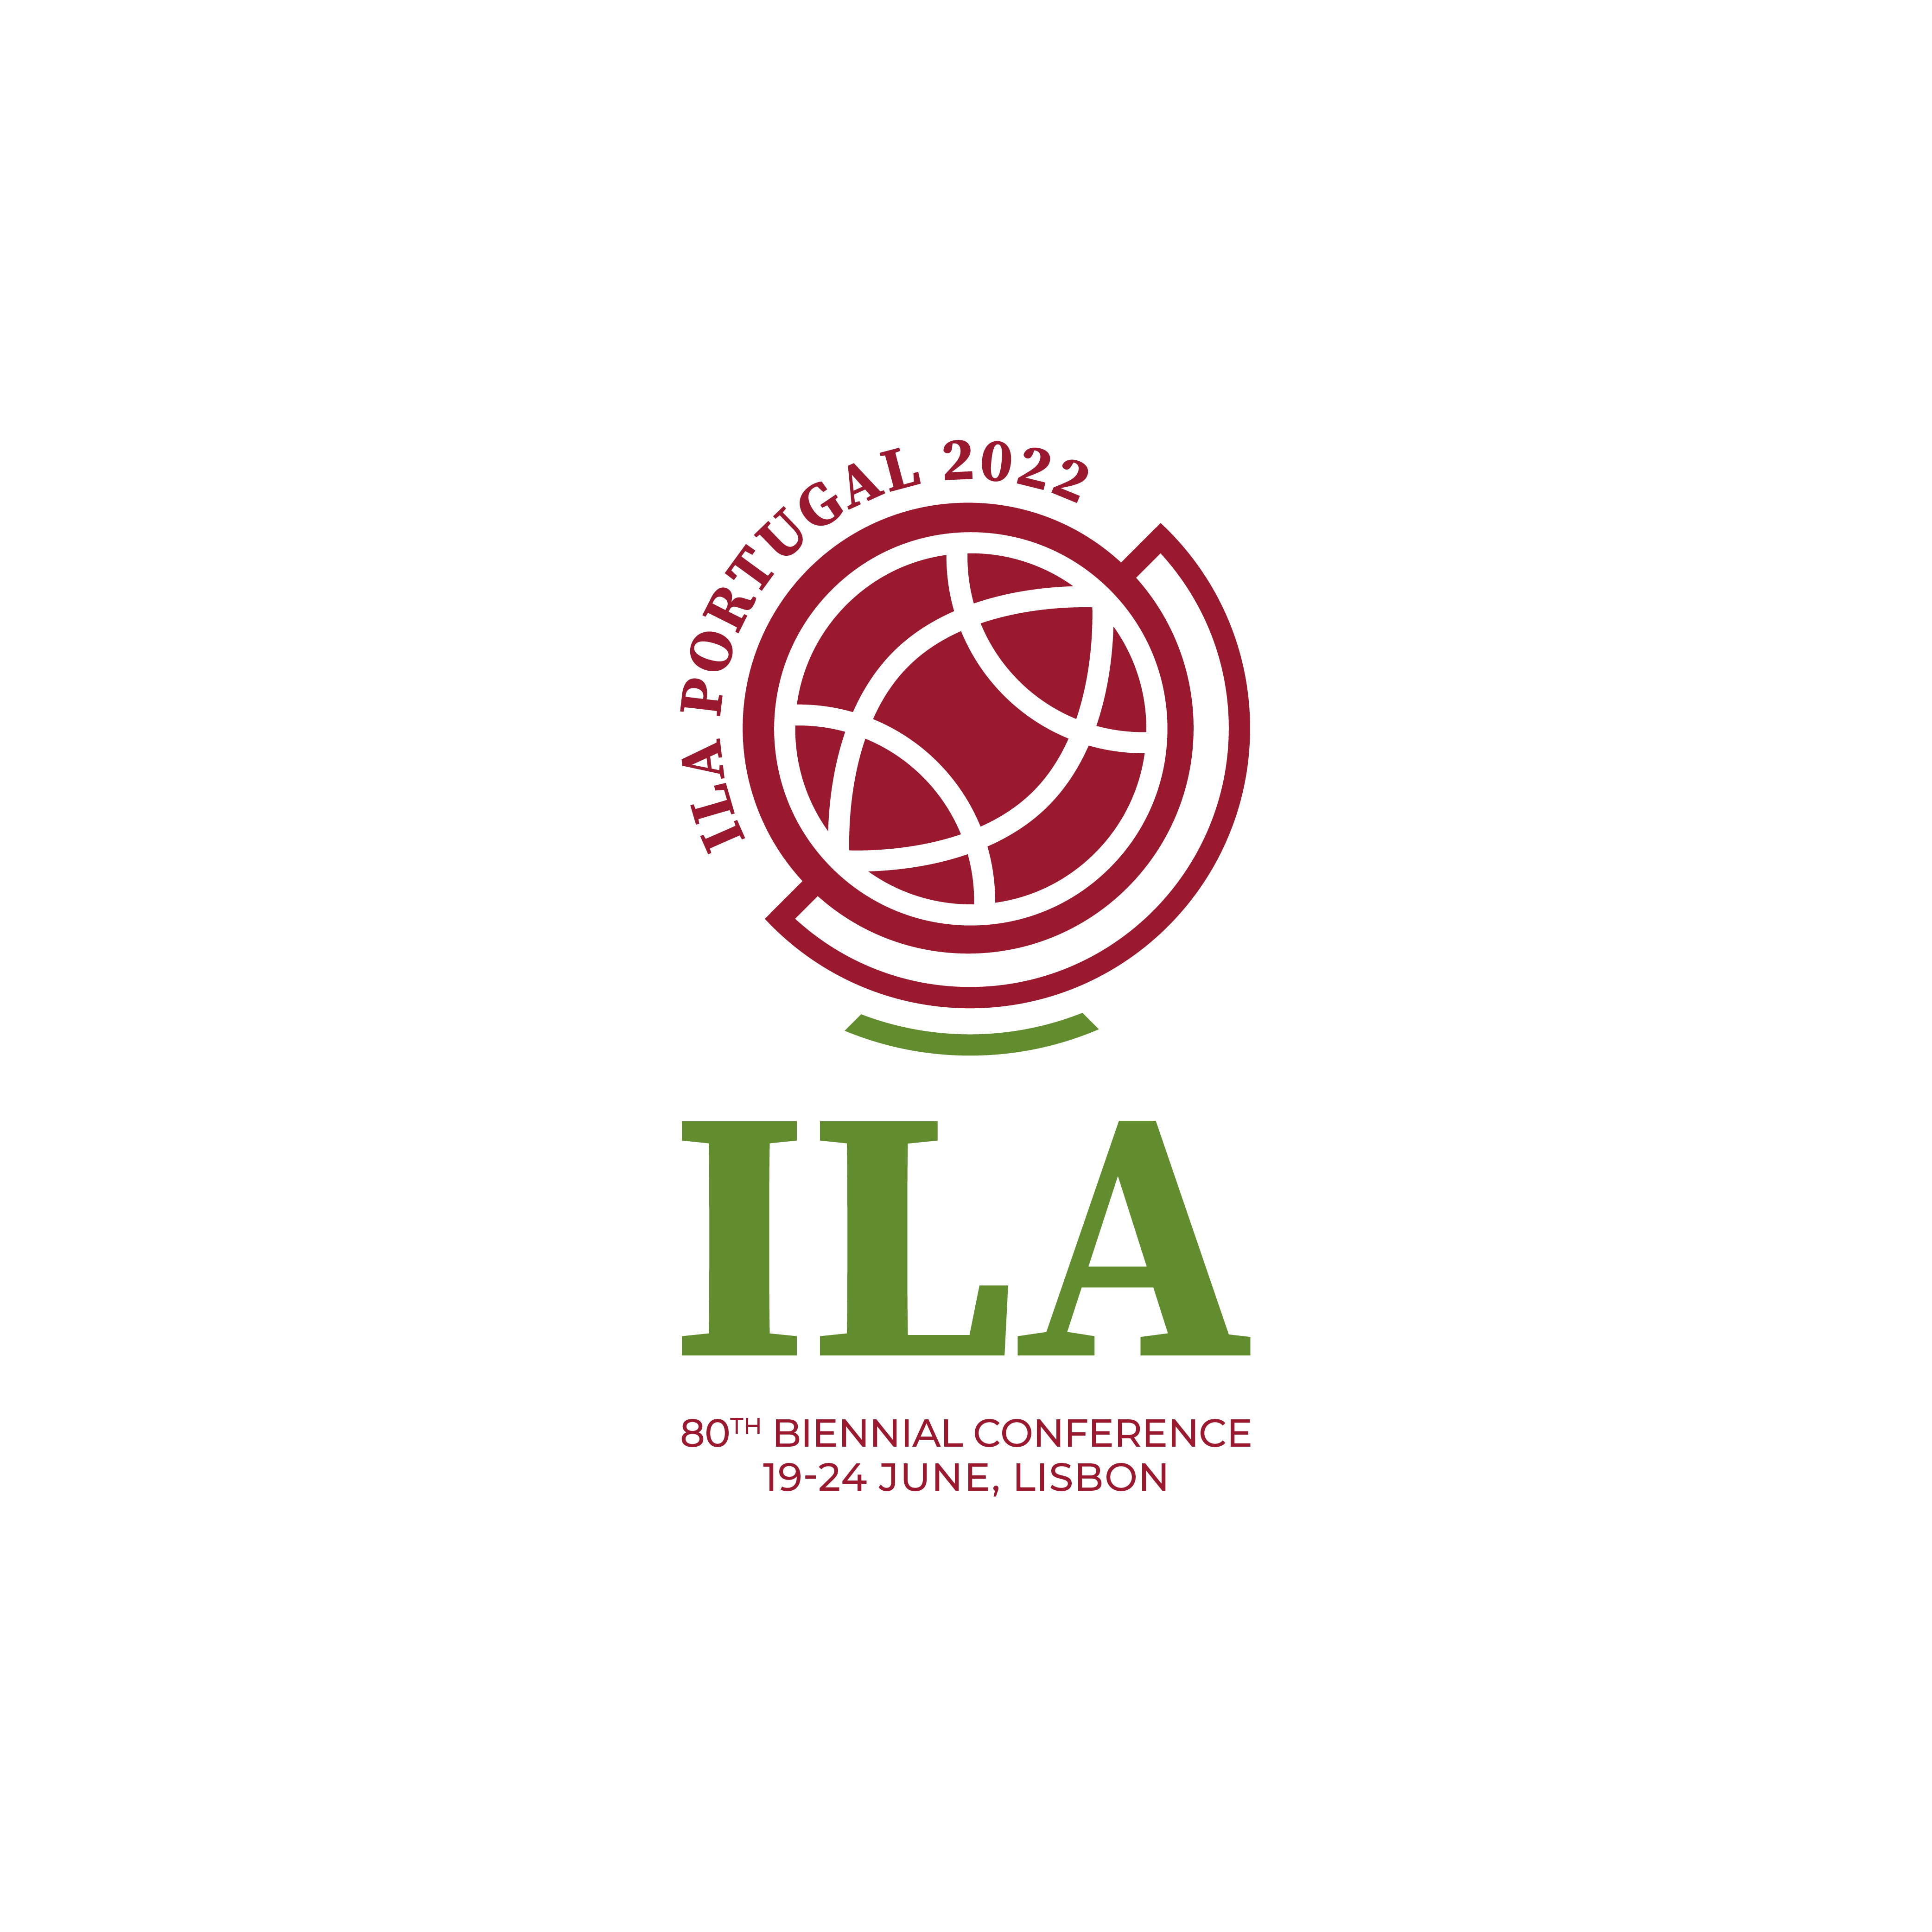 International Law Association Portugal